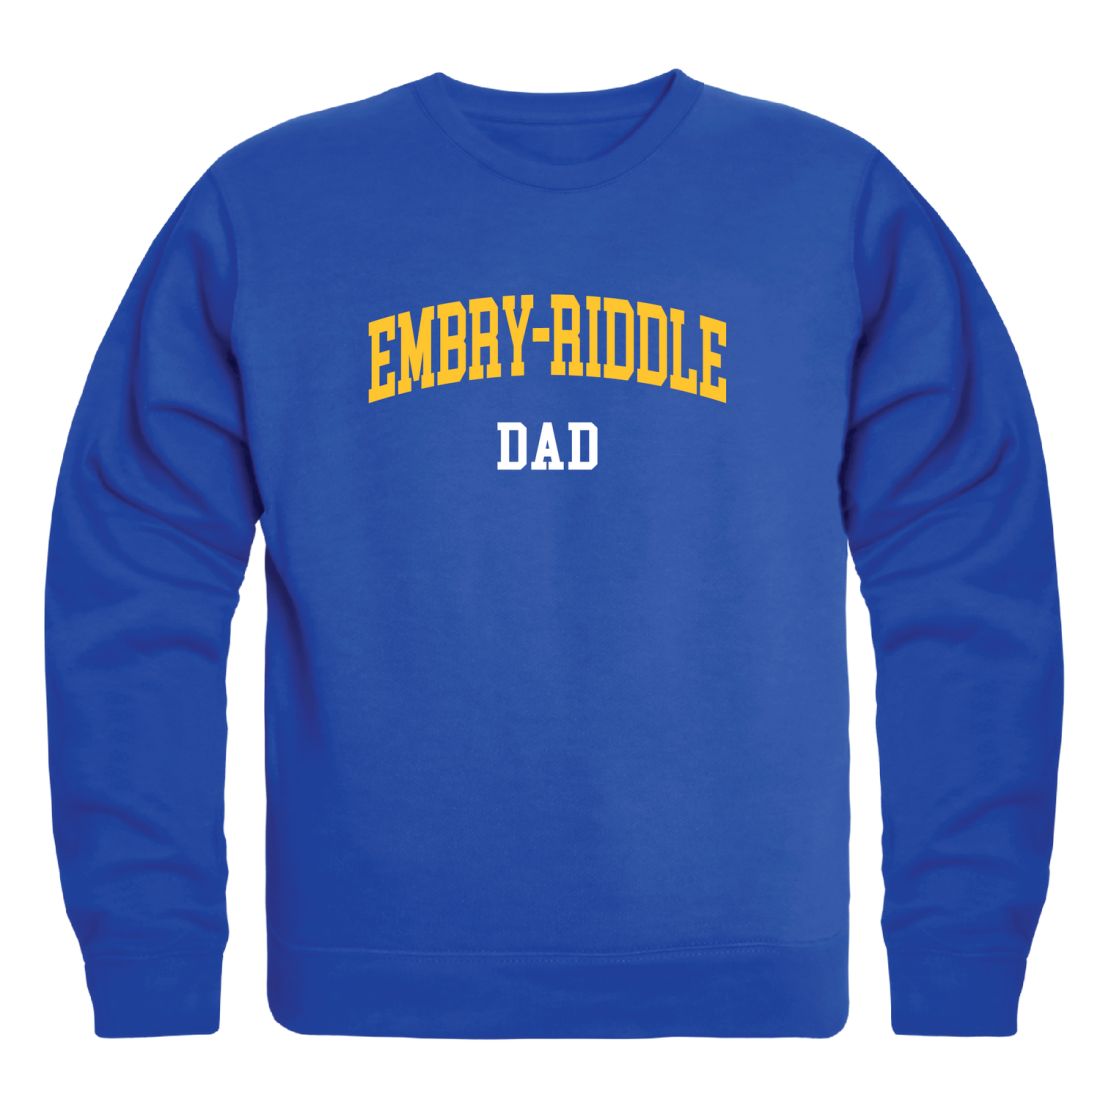 ERAU Eagles Dad Fleece Crewneck Pullover Sweatshirt